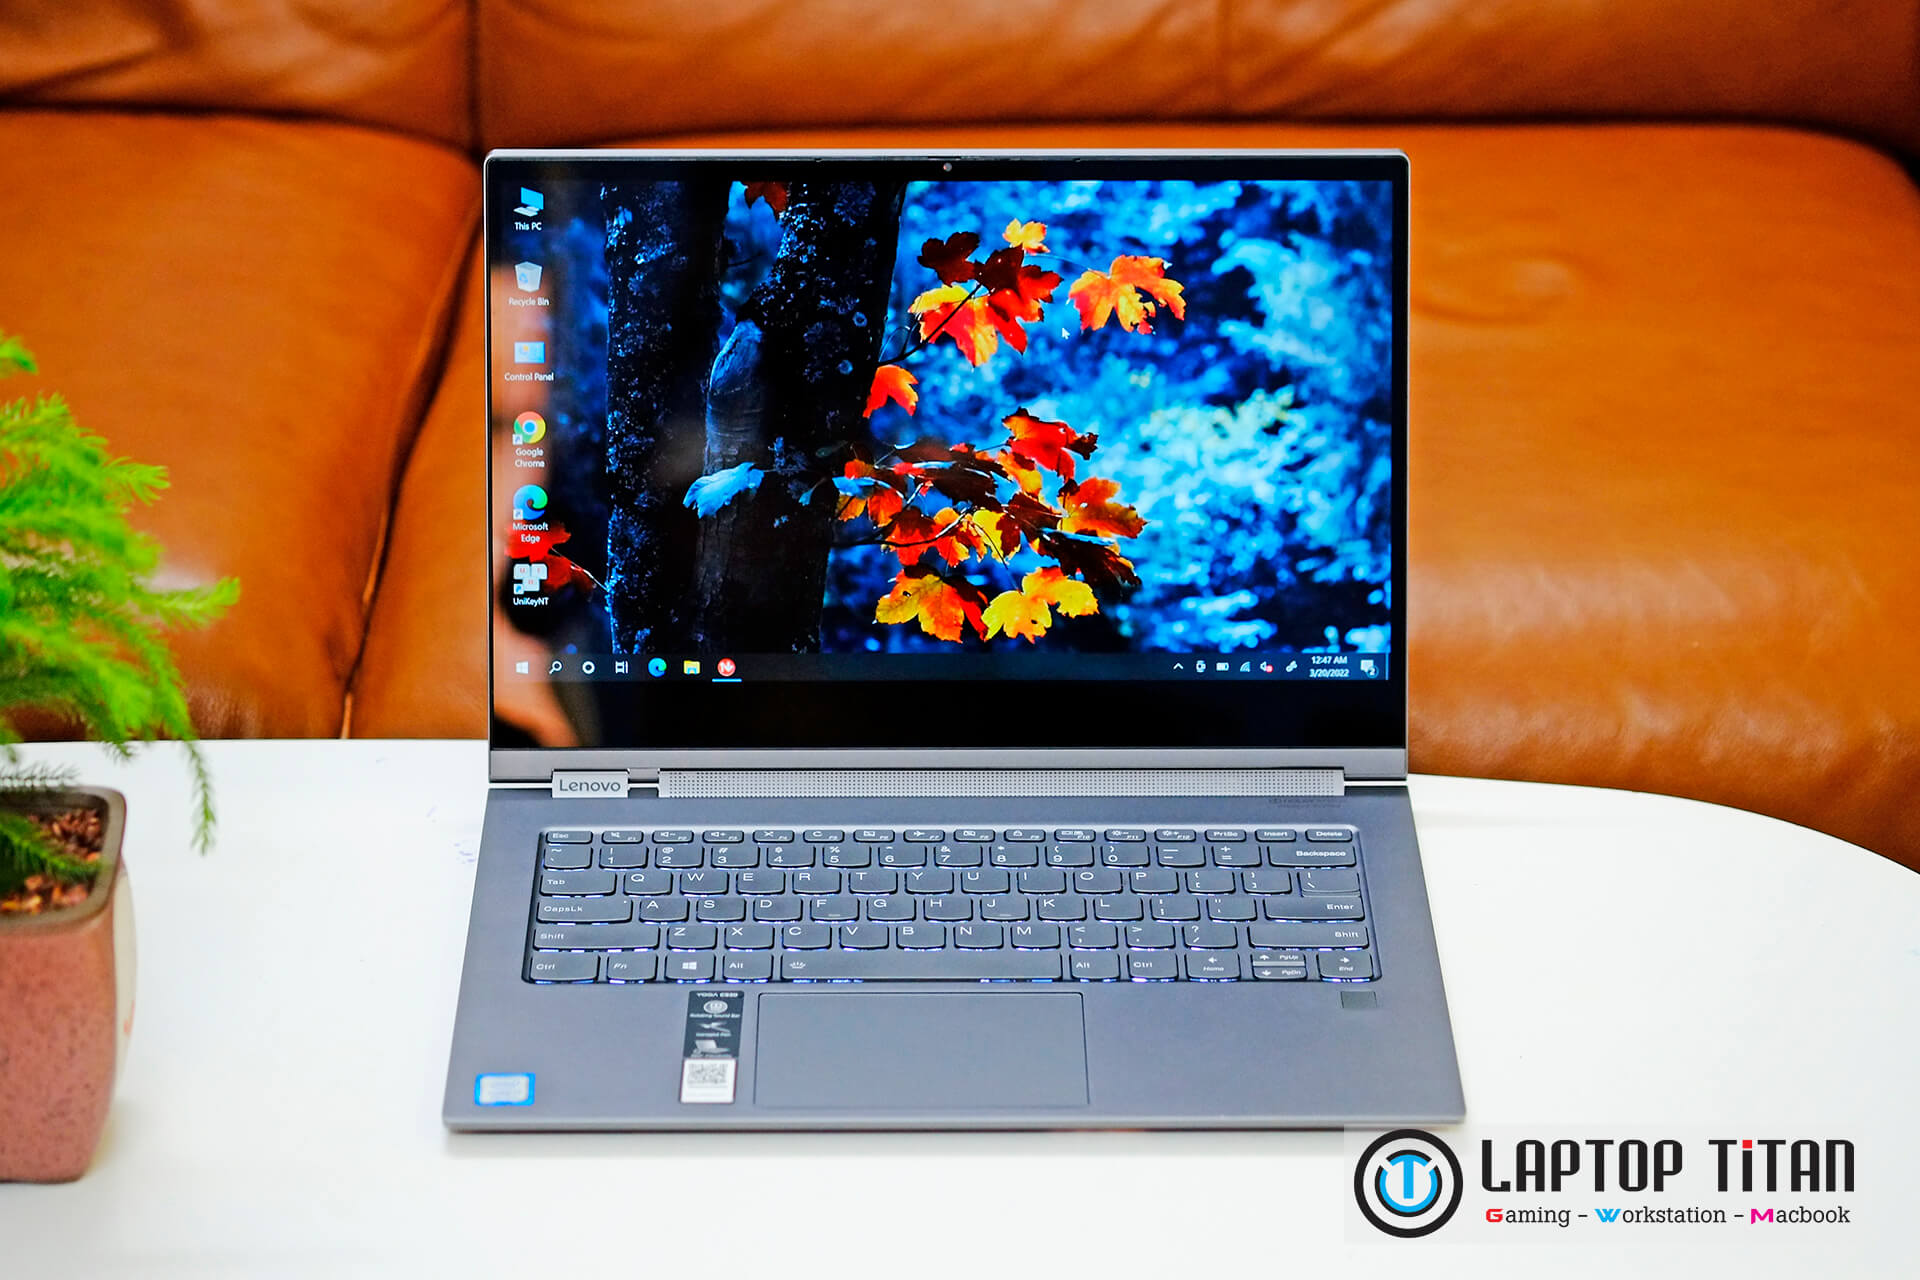 Lenovo Yoga C930 Laptoptitan 01